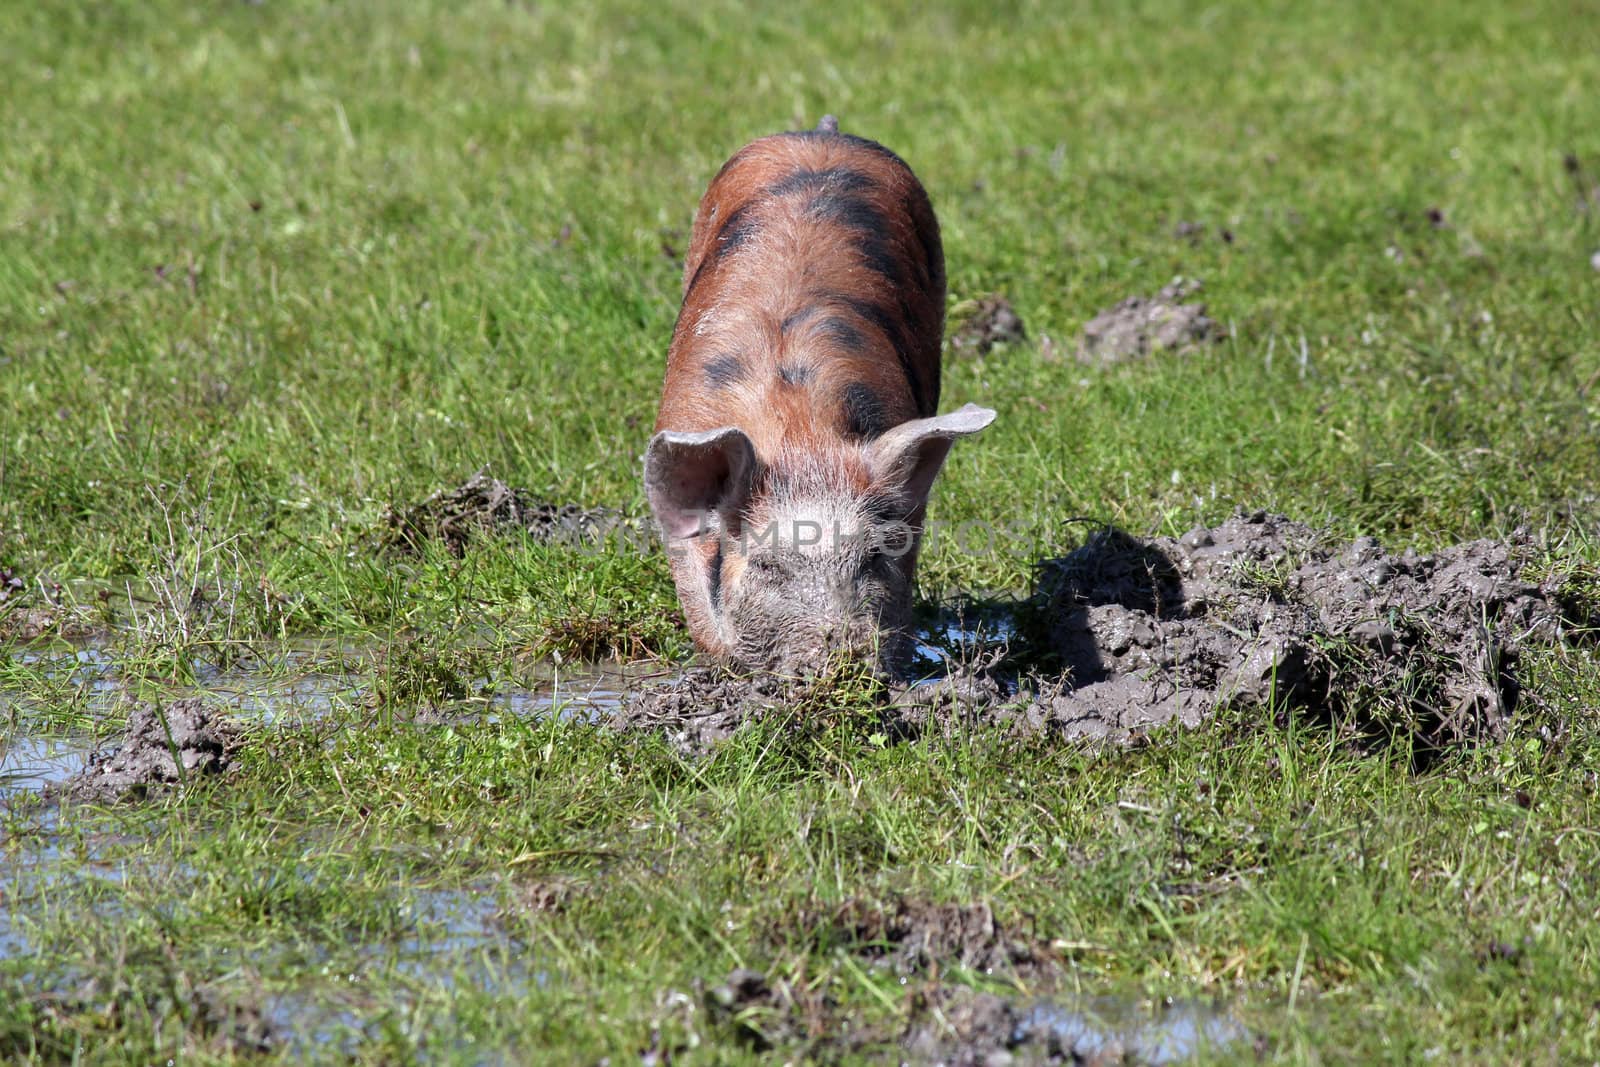 little pig in a mud farm scene by goce